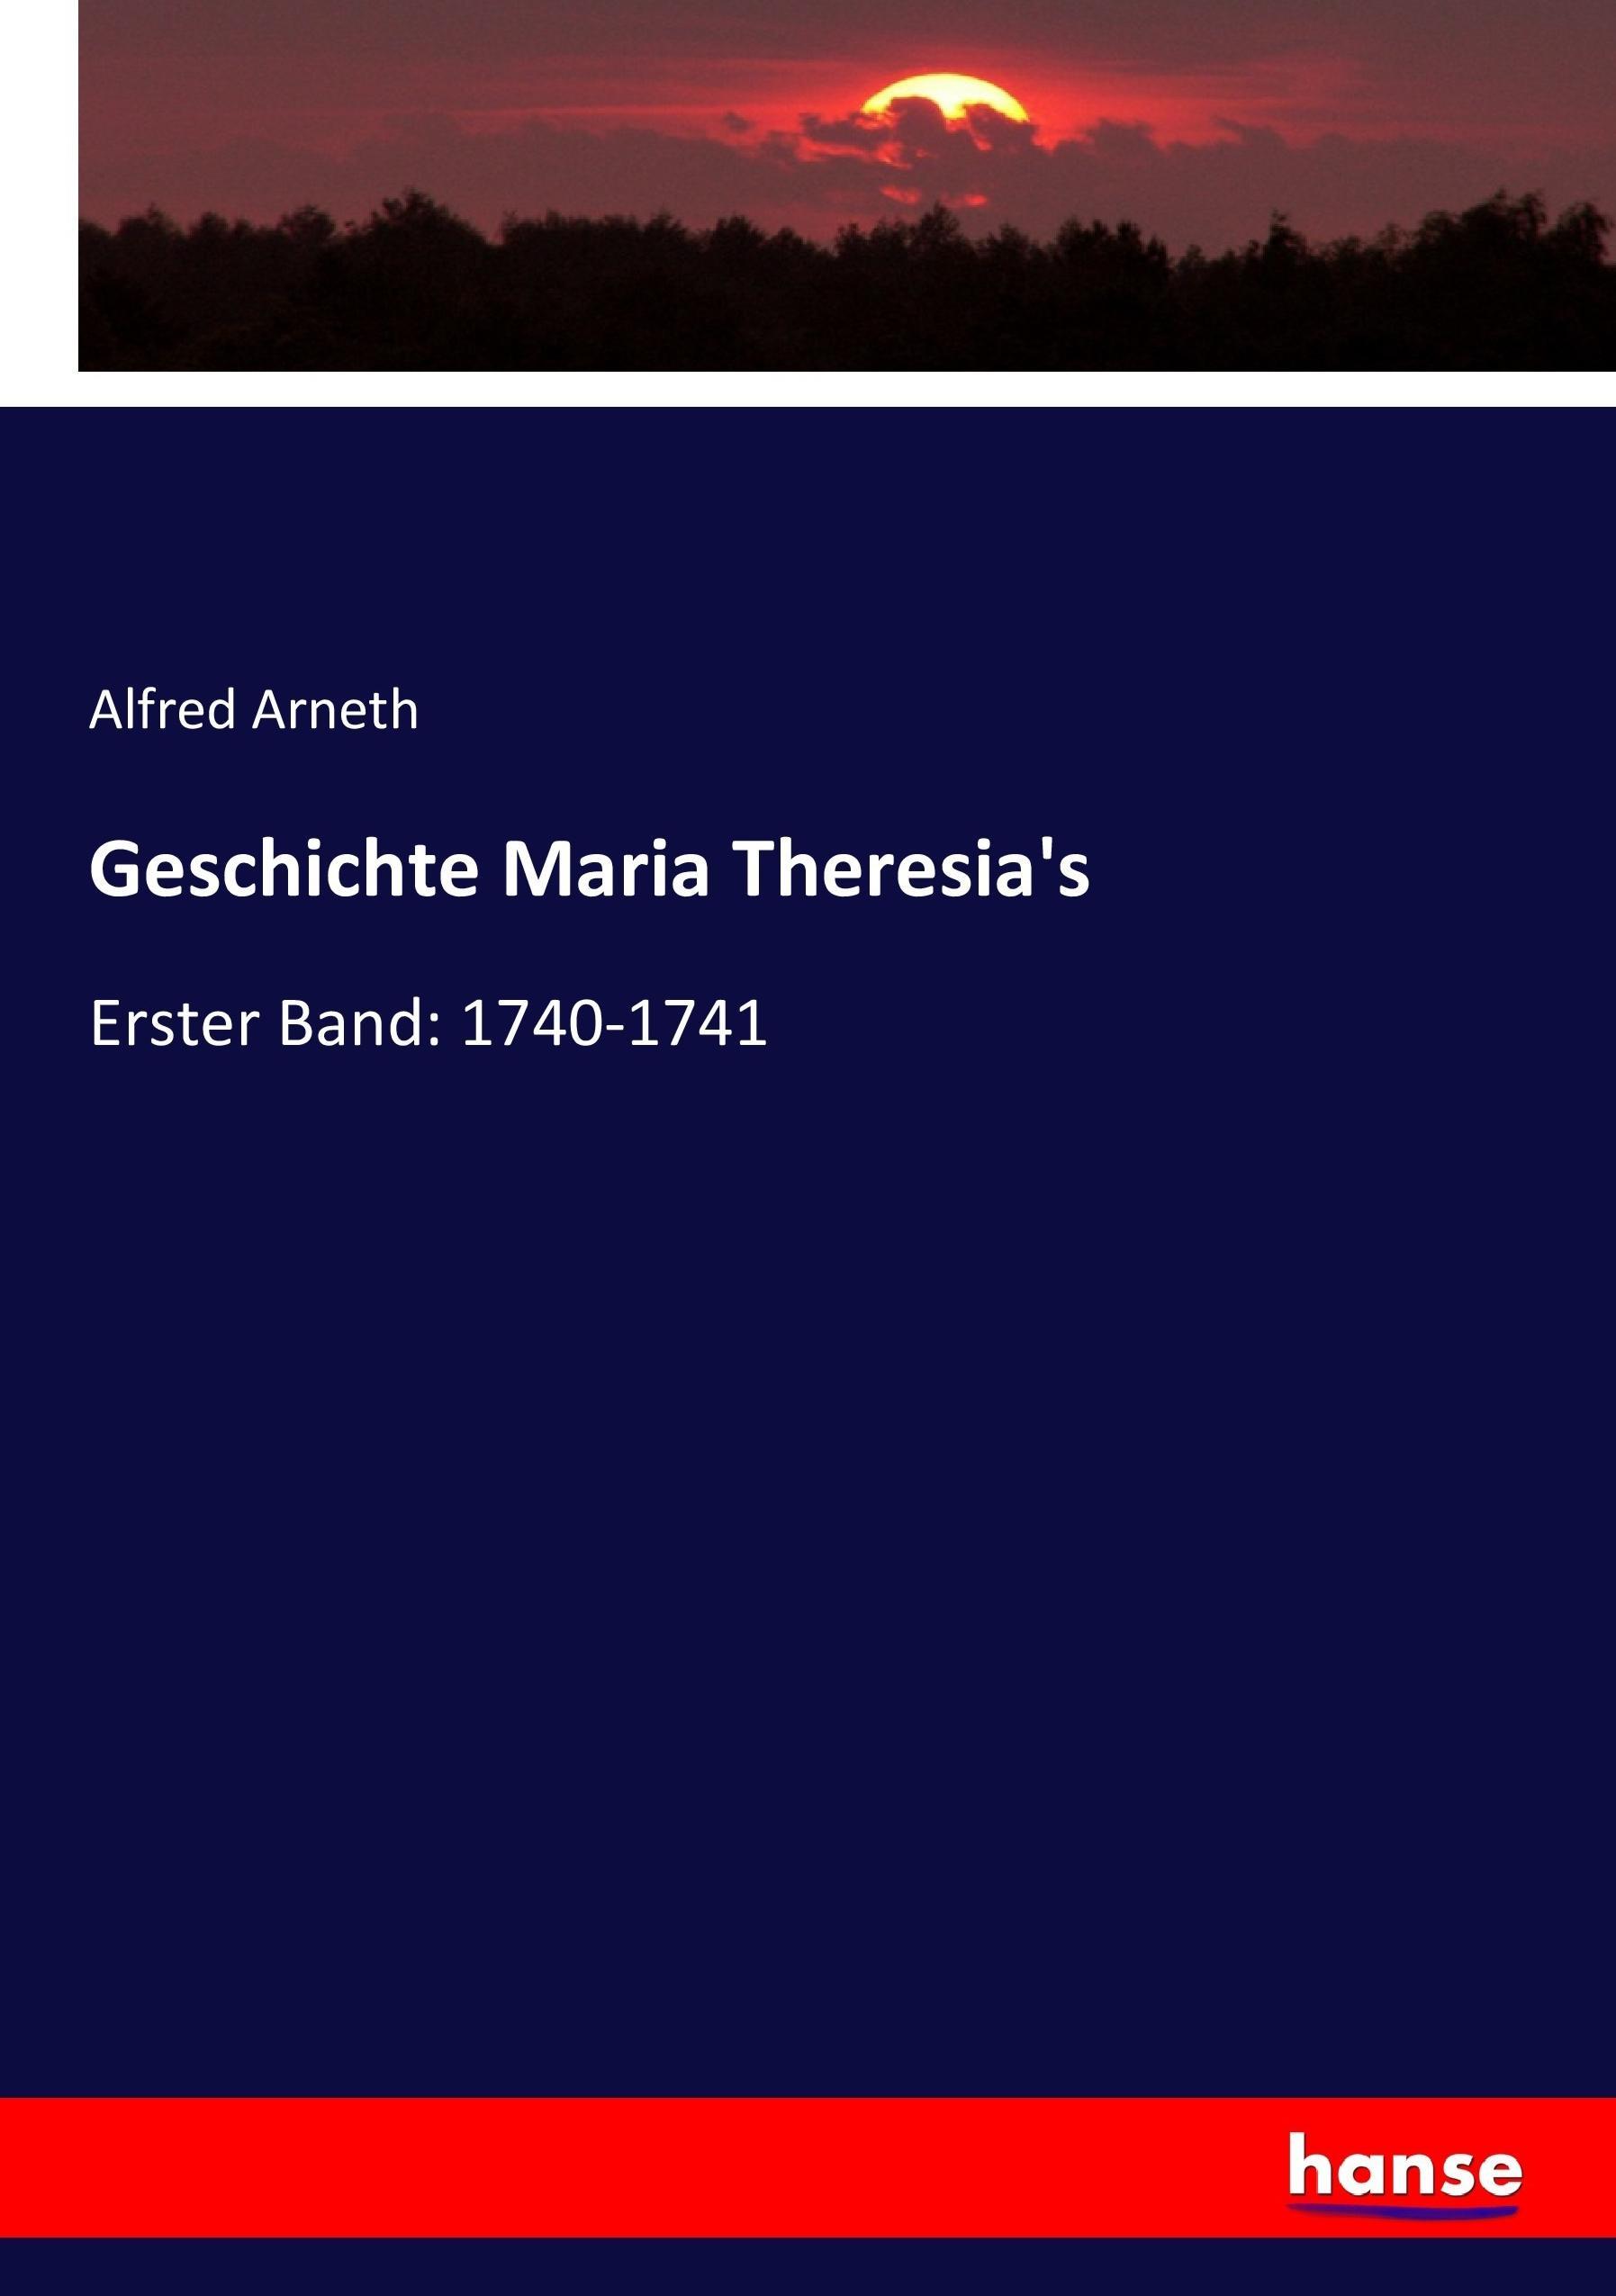 Geschichte Maria Theresia's / Erster Band: 1740-1741 / Alfred Arneth / Taschenbuch / Paperback / 440 S. / Deutsch / 2017 / hansebooks / EAN 9783743673281 - Arneth, Alfred